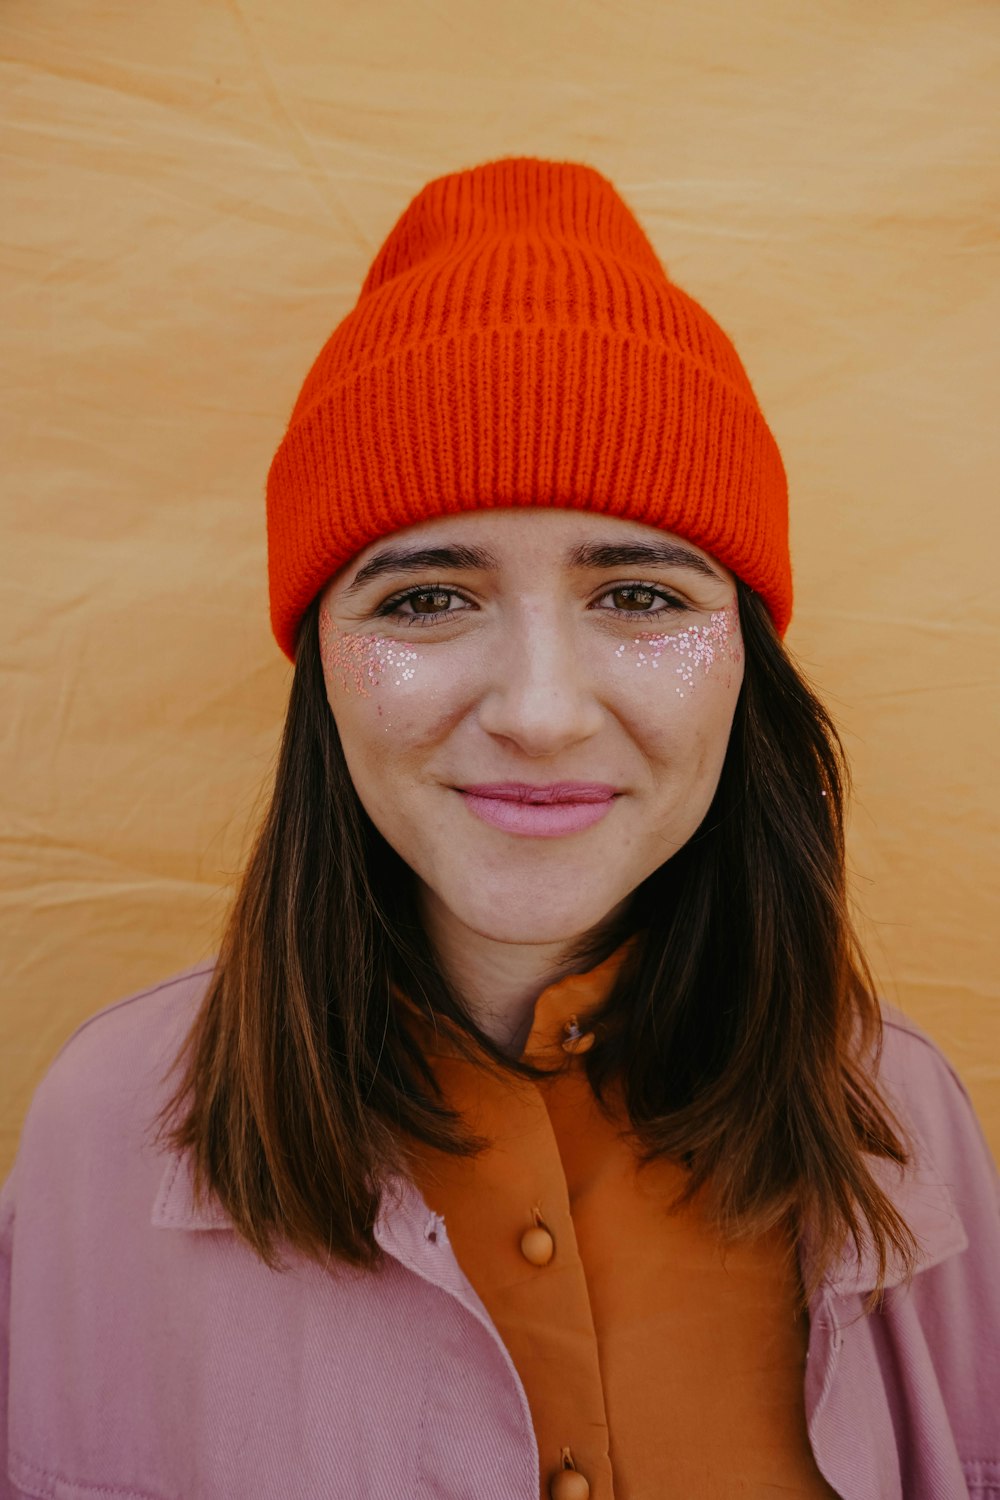 オレンジ色のニット帽をかぶった女性が微笑む